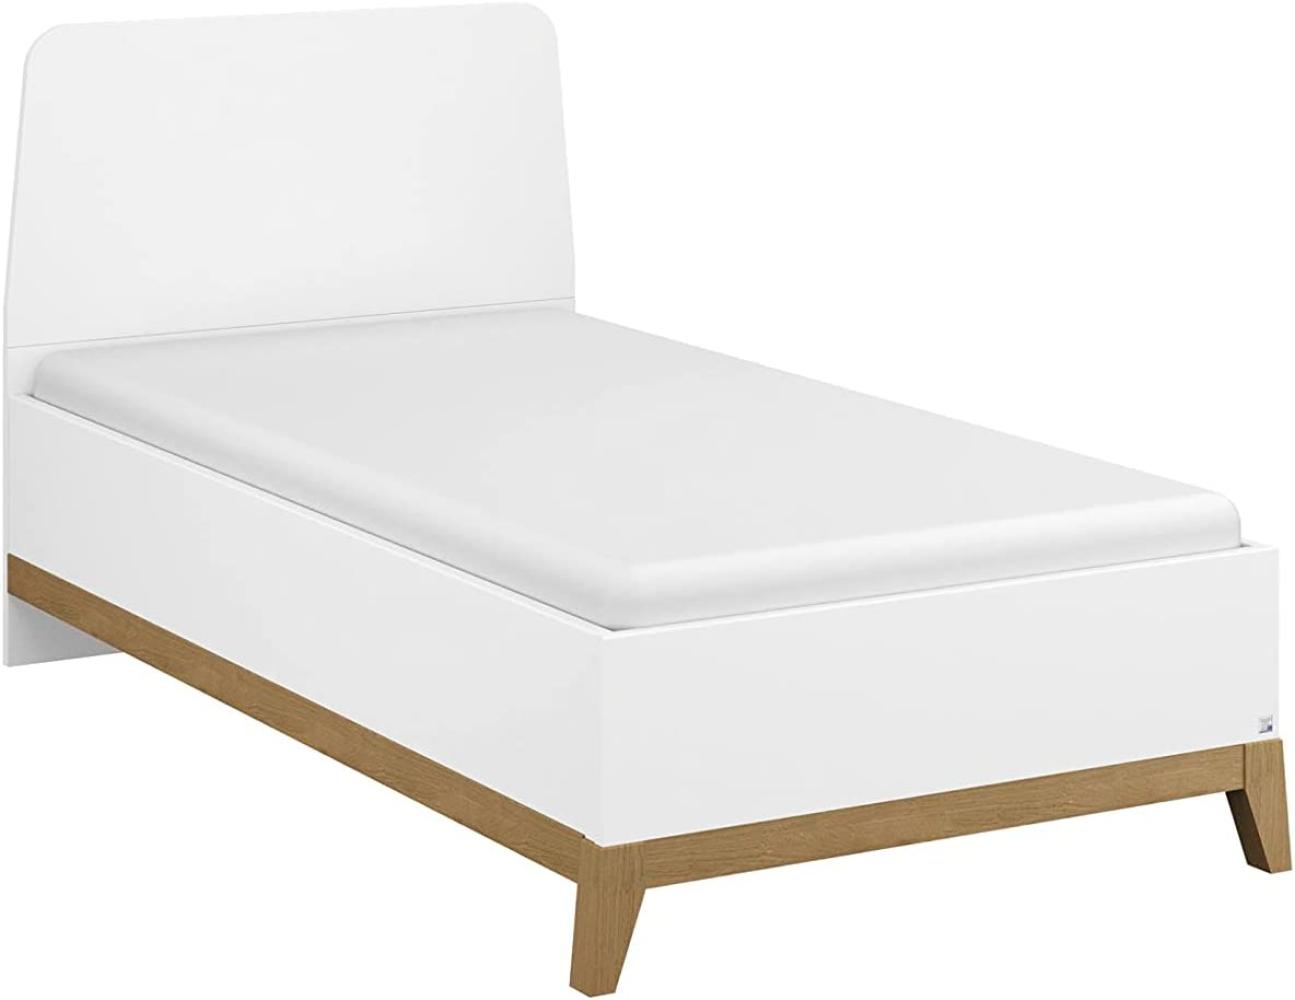 Rauch Möbel Carlsson Bett Einzelbett Futonbett in weiß, Absetzungen/Füße Eiche massiv, Liegefläche 90x200 cm, Gesamtmaße BxHxT 99x97x207 cm Bild 1